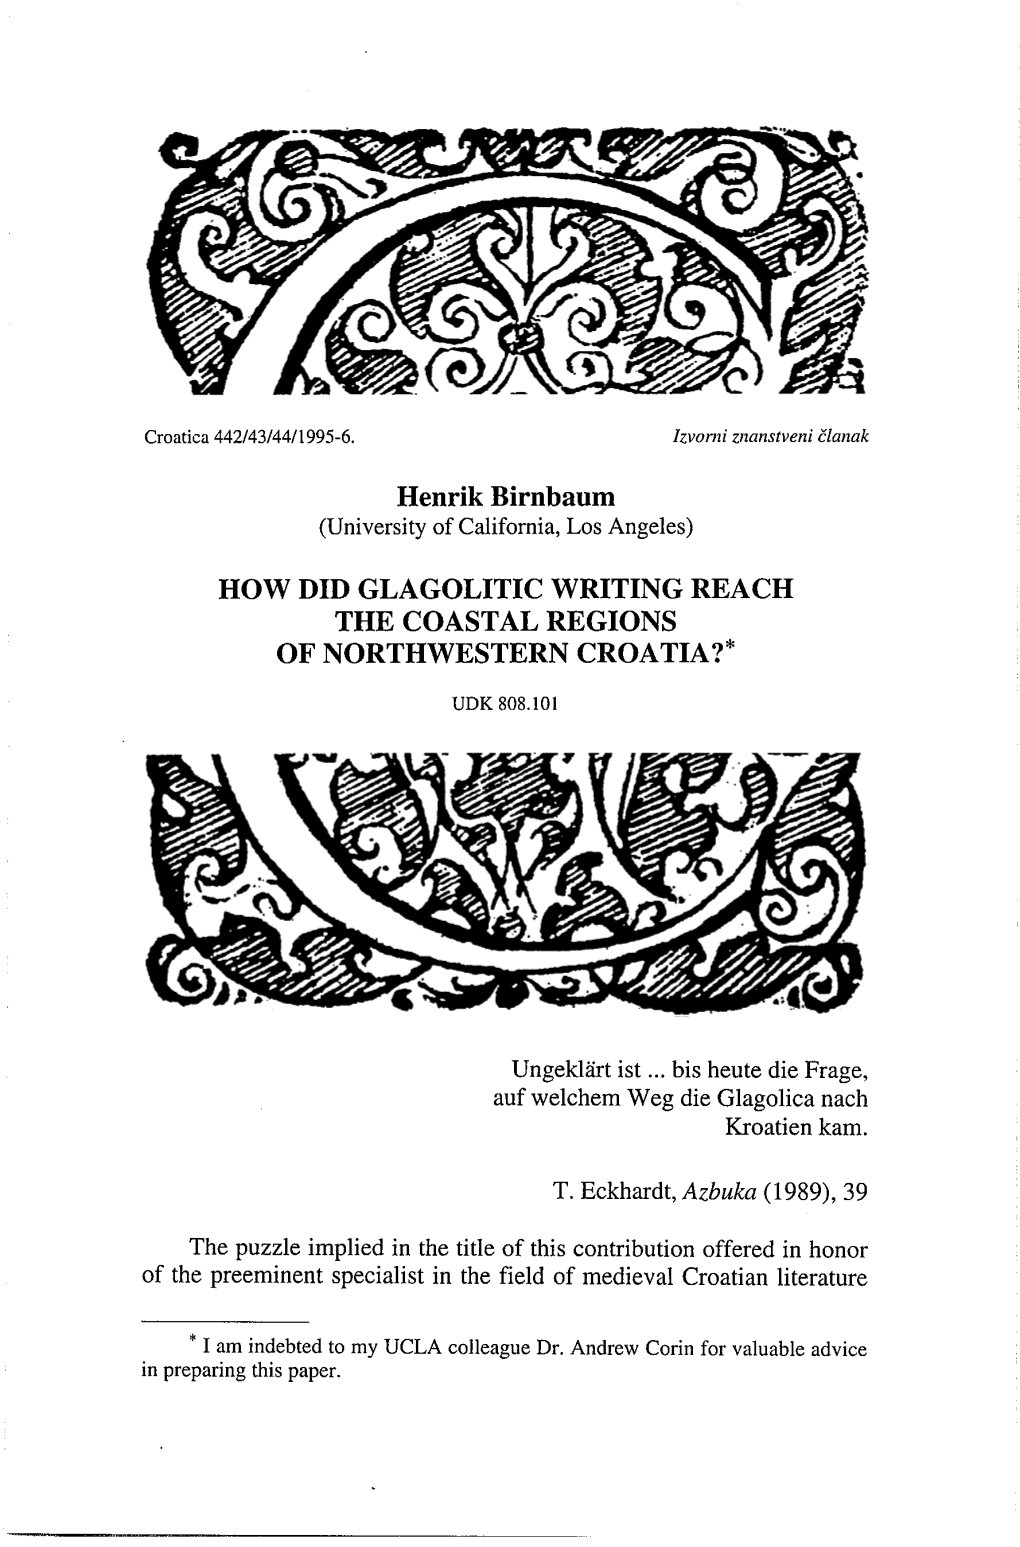 Henrik Birnbaum HOW DID GLAGOLITIC WRITING REACH the COASTAL REGIONS of NORTHWESTERN CROATIA?*